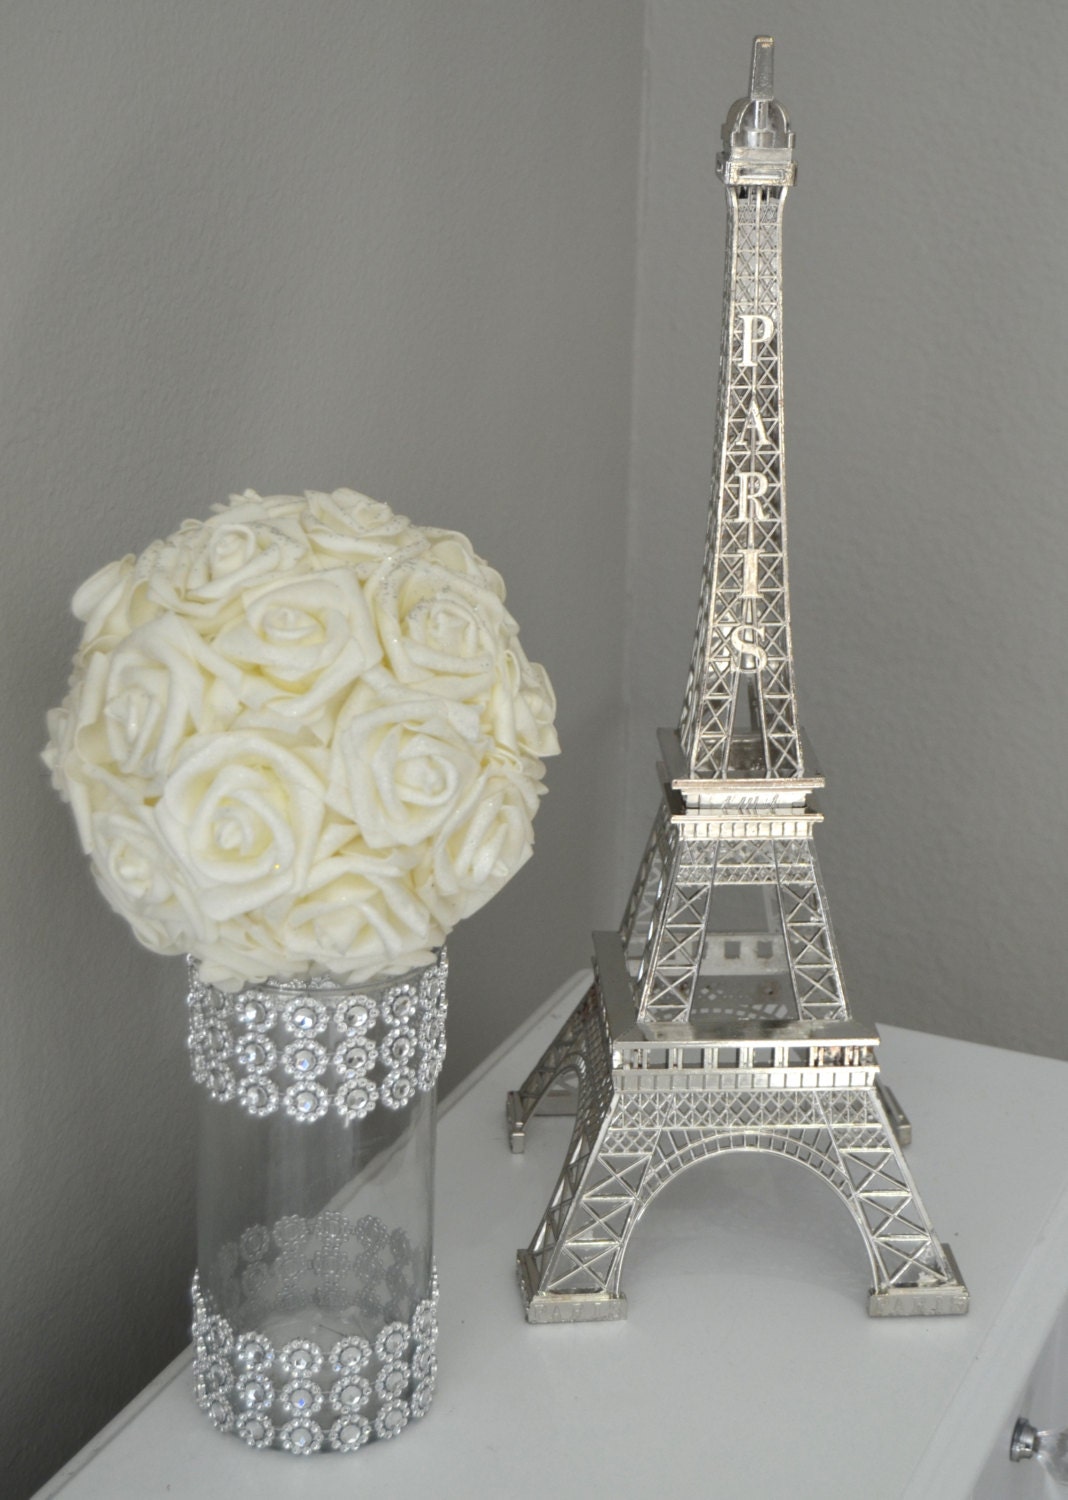 6 Eiffel Tower Wedding Centerpieces Reception Tables Paris Theme Party Decor 